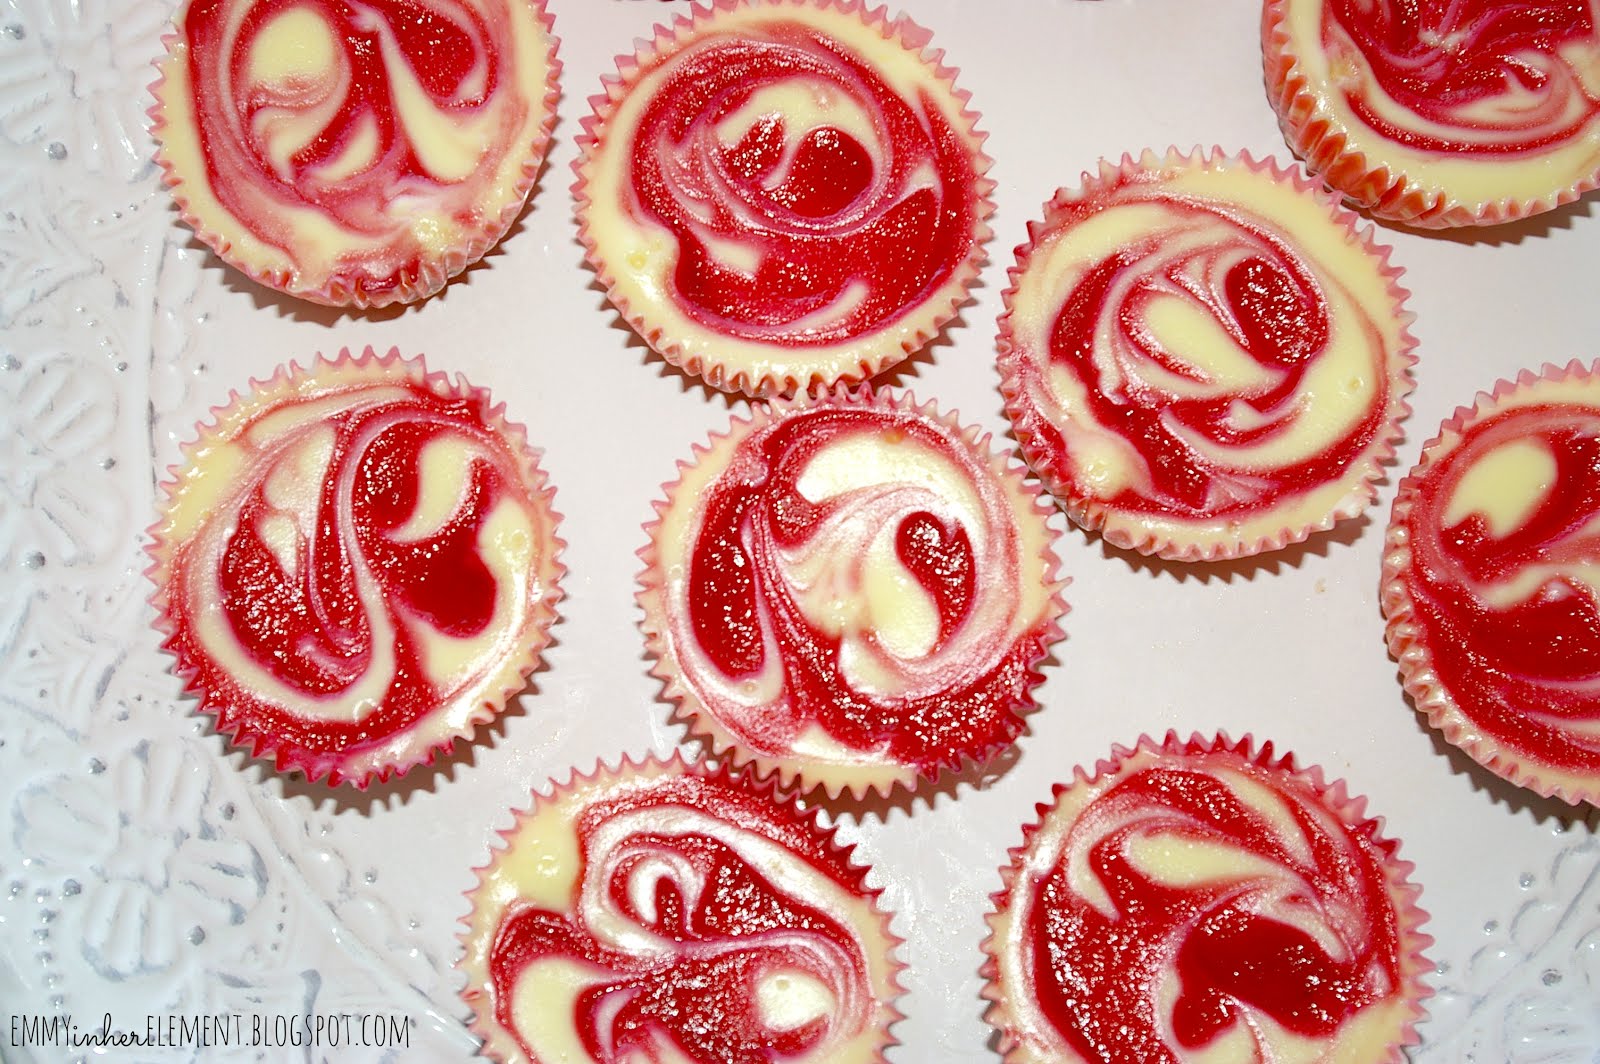 Mini cheesecakes with raspberry swirls